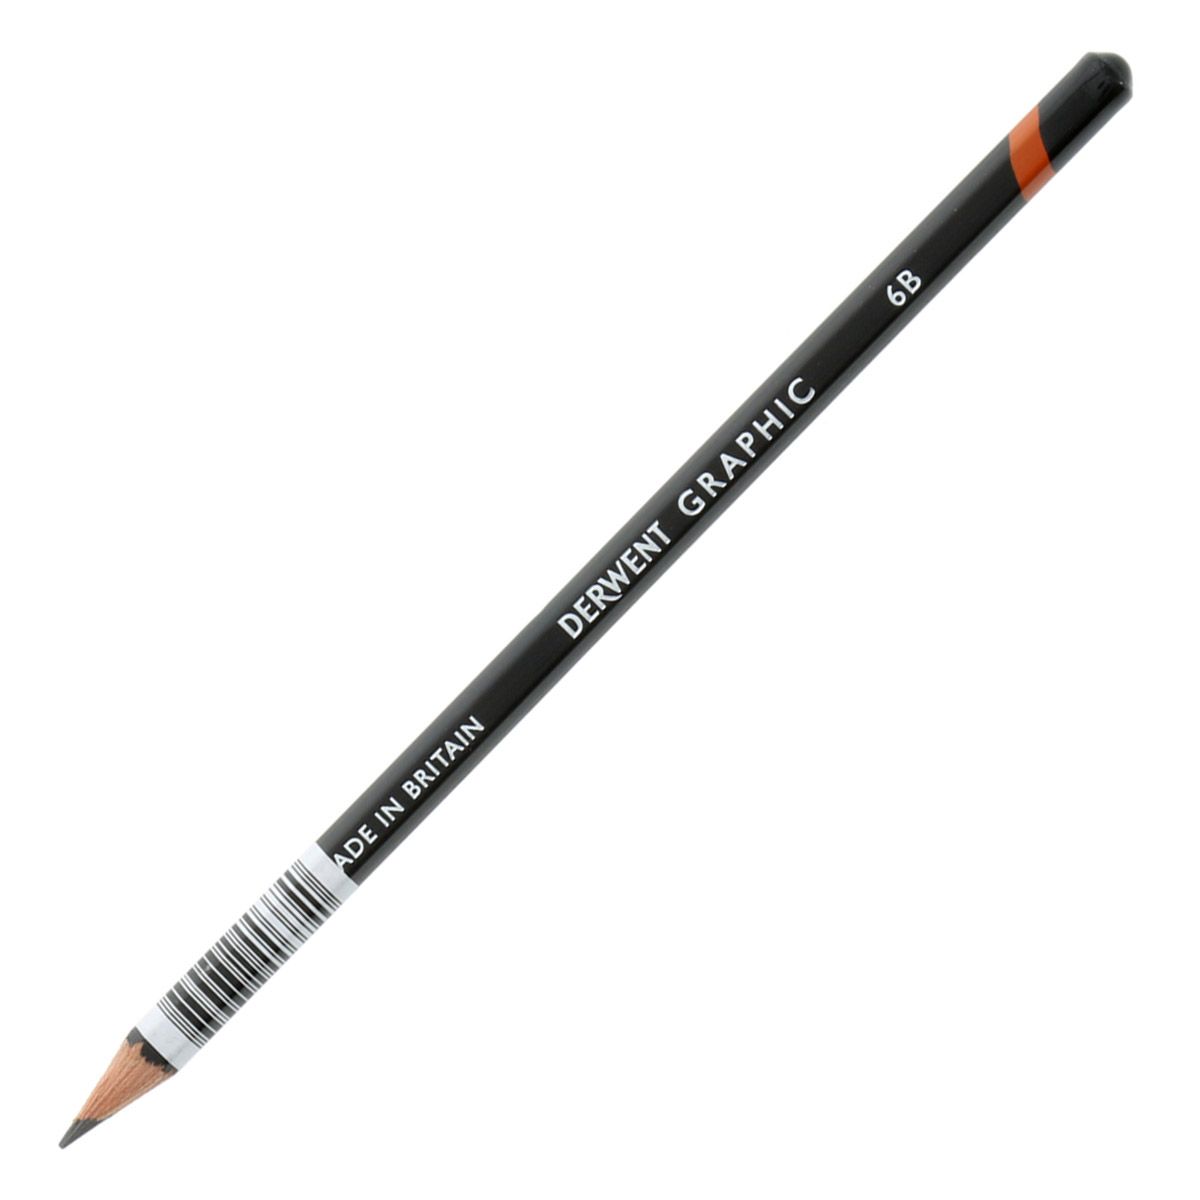 Derwent Graphic Pencil - 6B